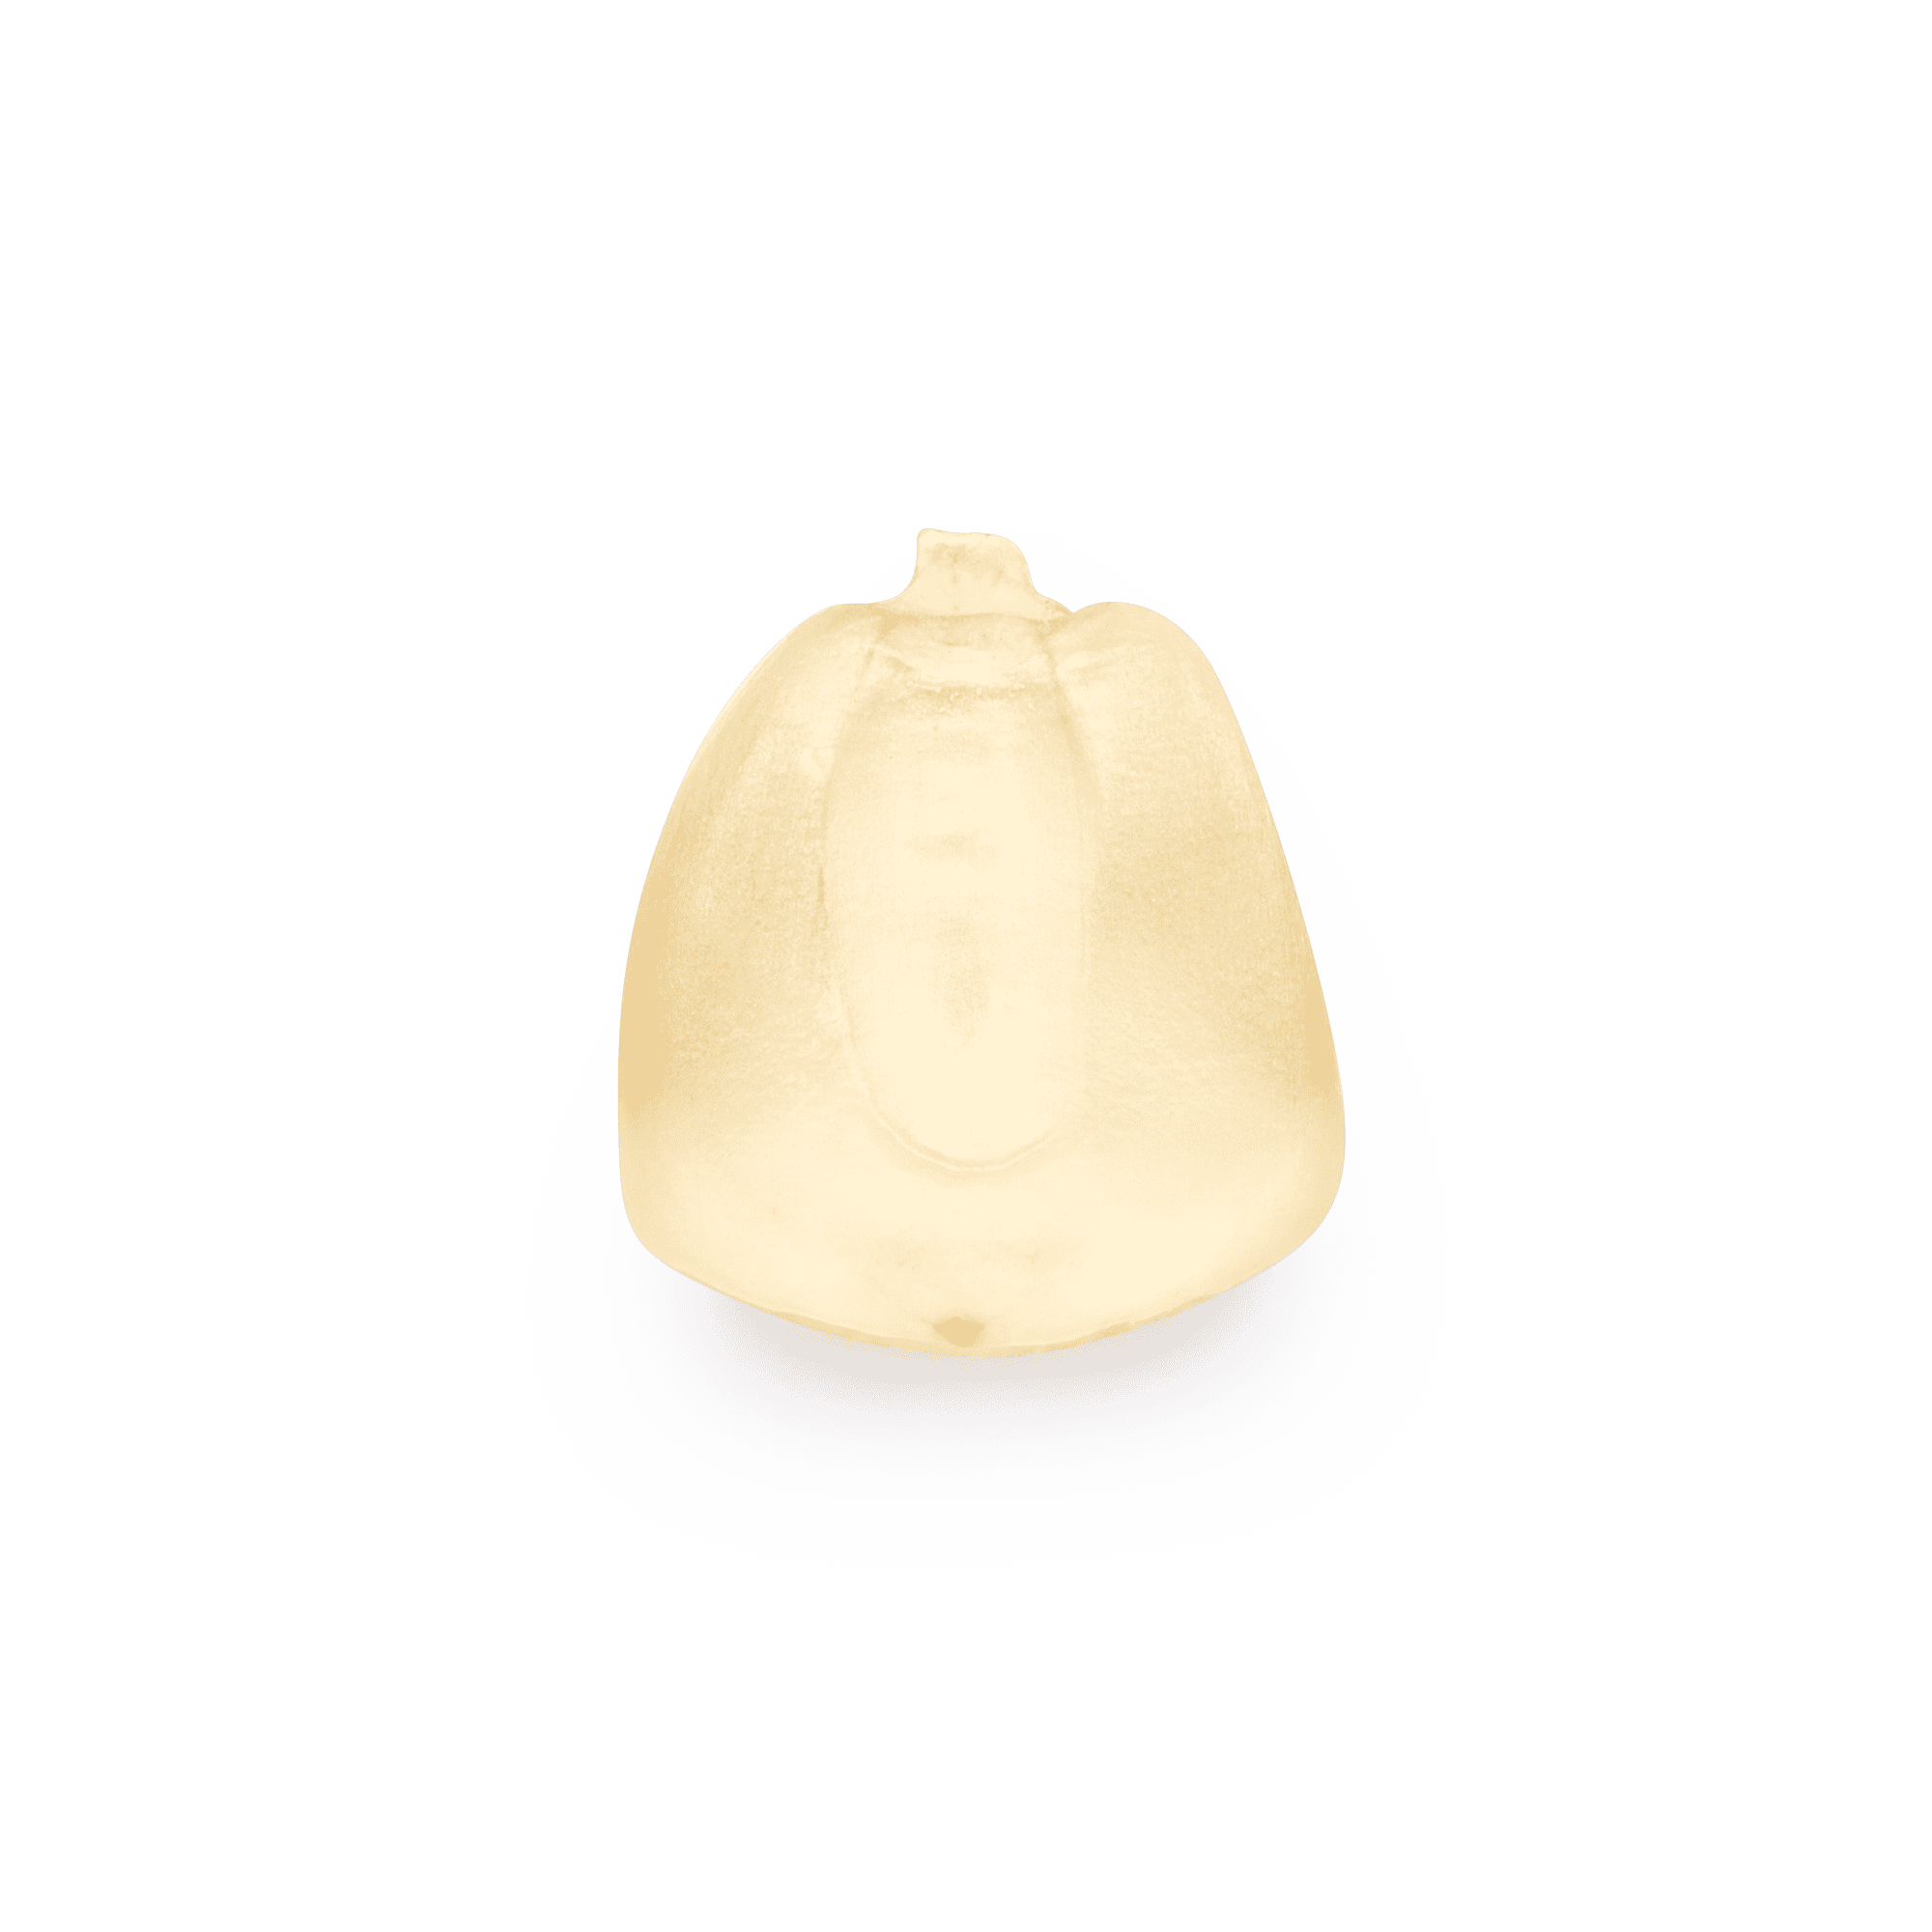 Heirloom Corn | Masienda White Olotillo Blanco from Mexico